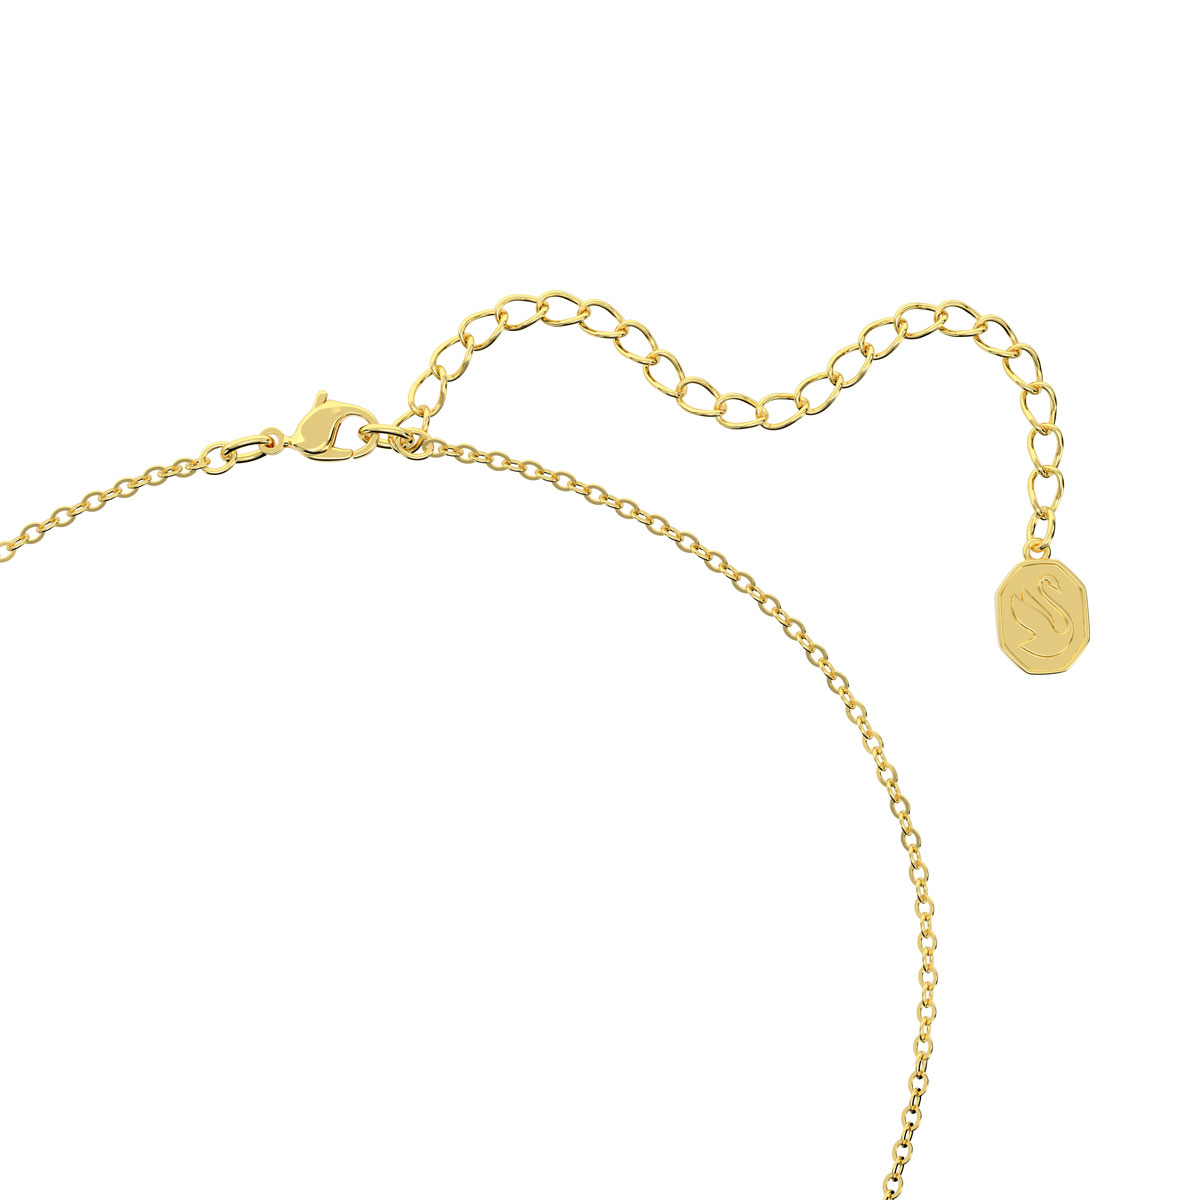 Swarovski Golden Crystal and Gold Bella Pendant Necklace